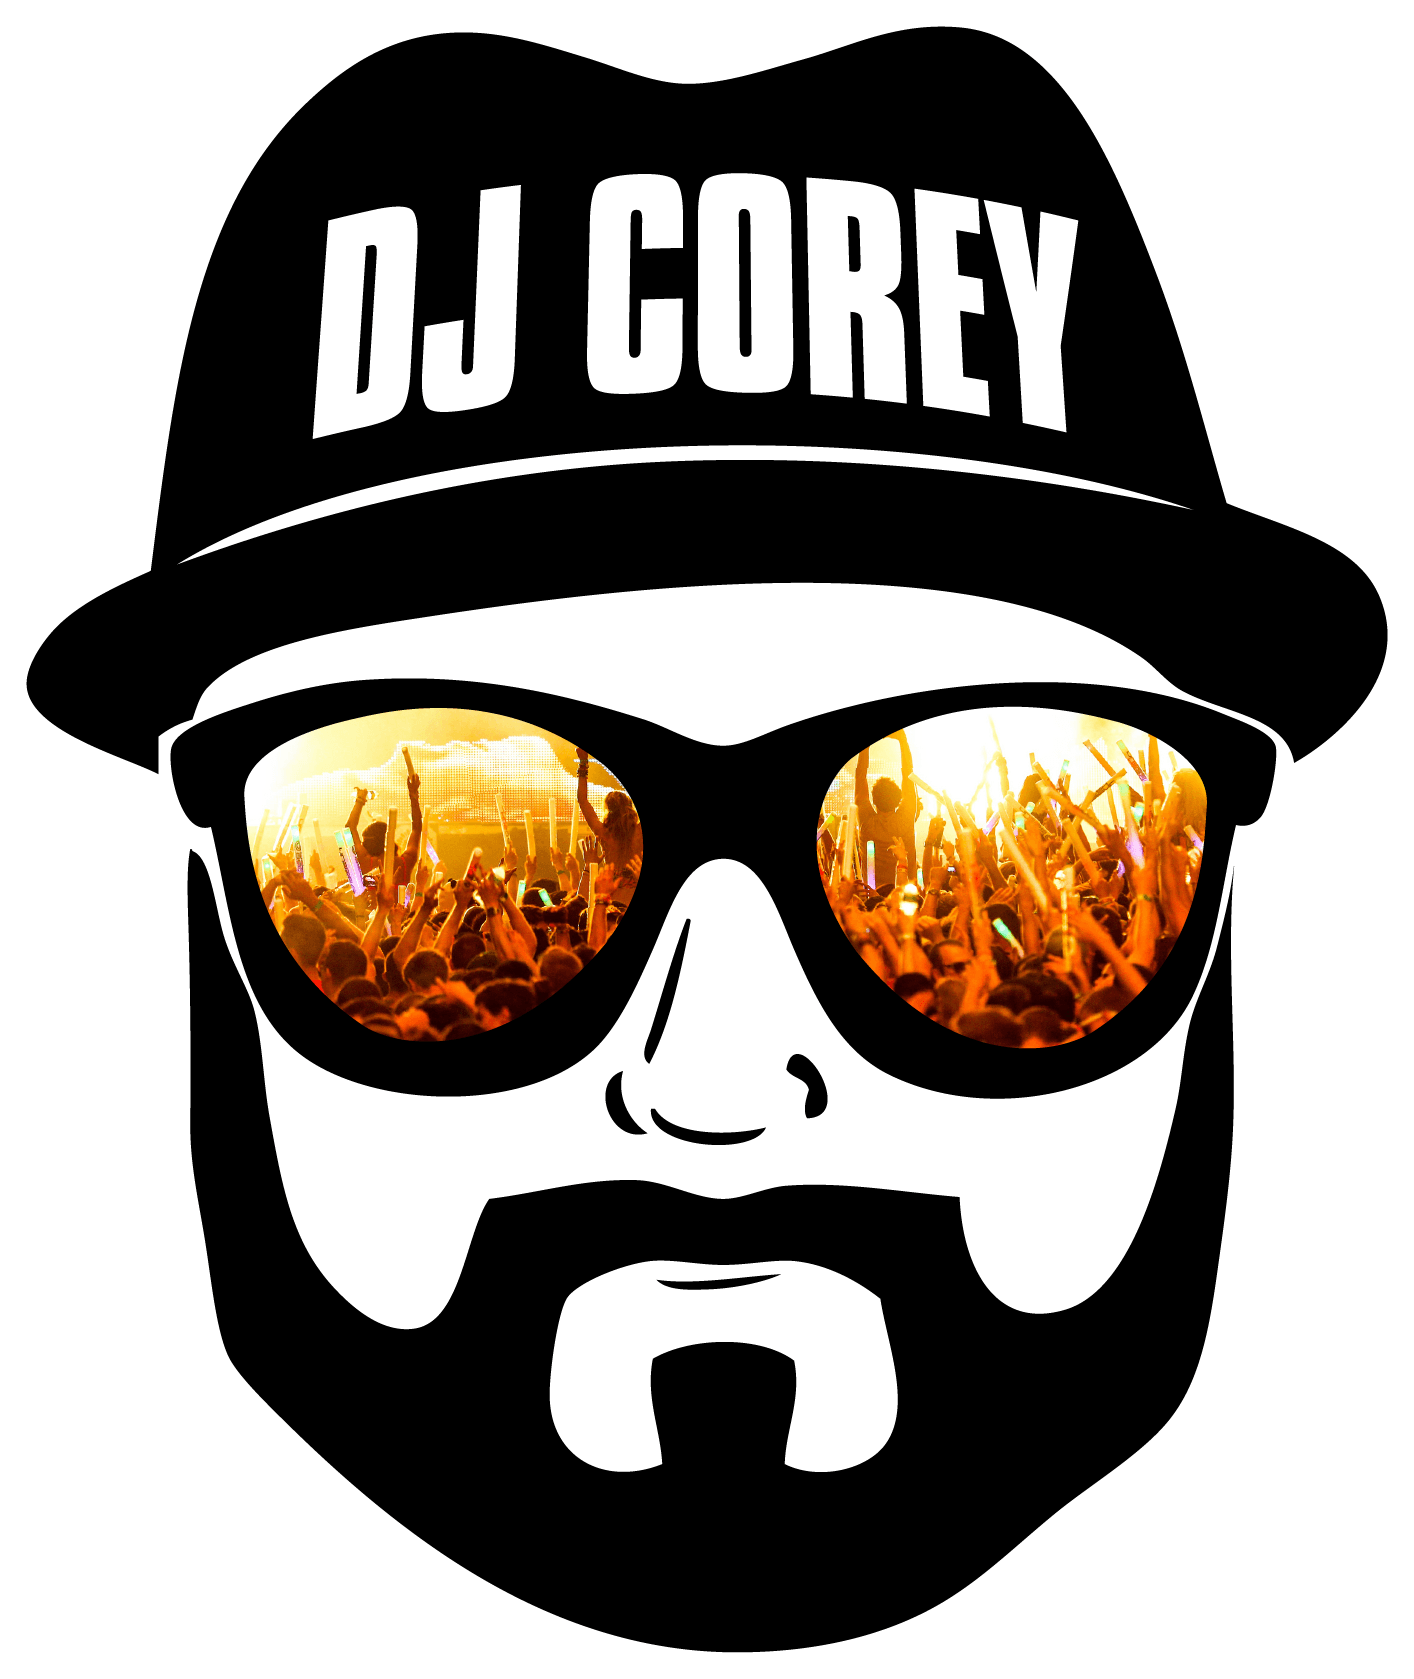 Corey Logo - Pricing - DJ Corey